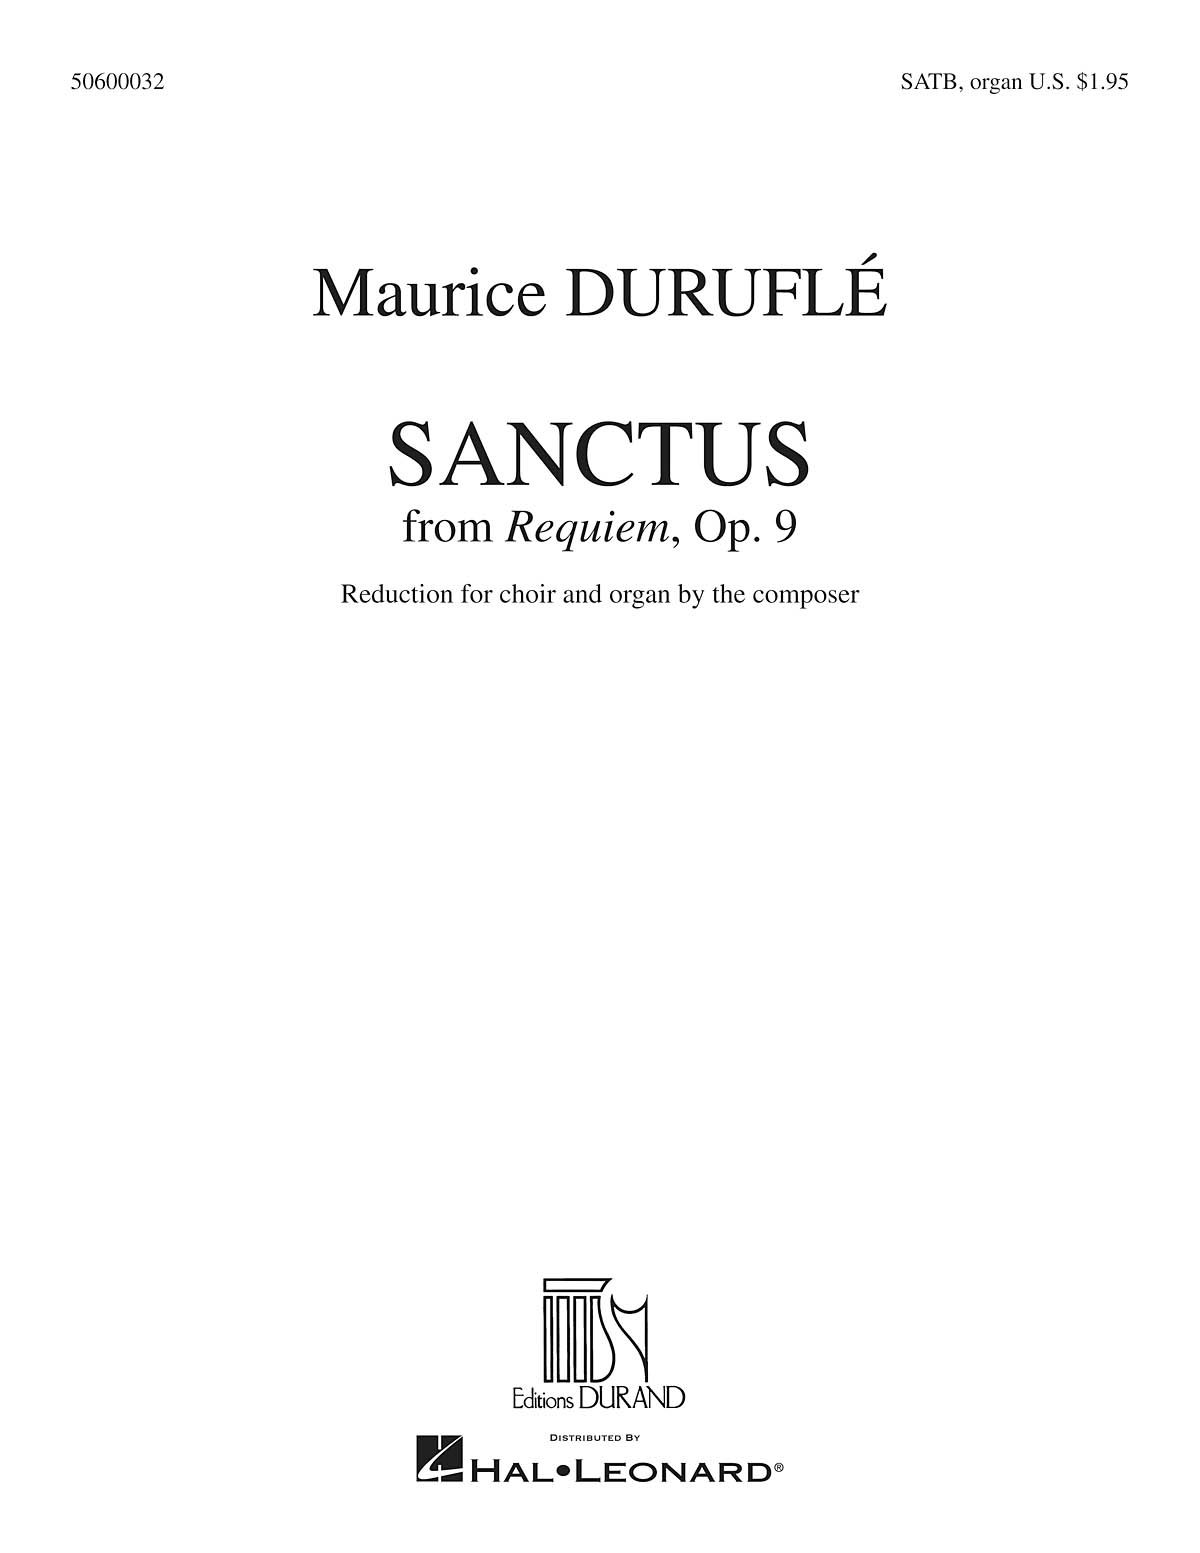 Maurice Durufl: Sanctus: SATB: Vocal Score